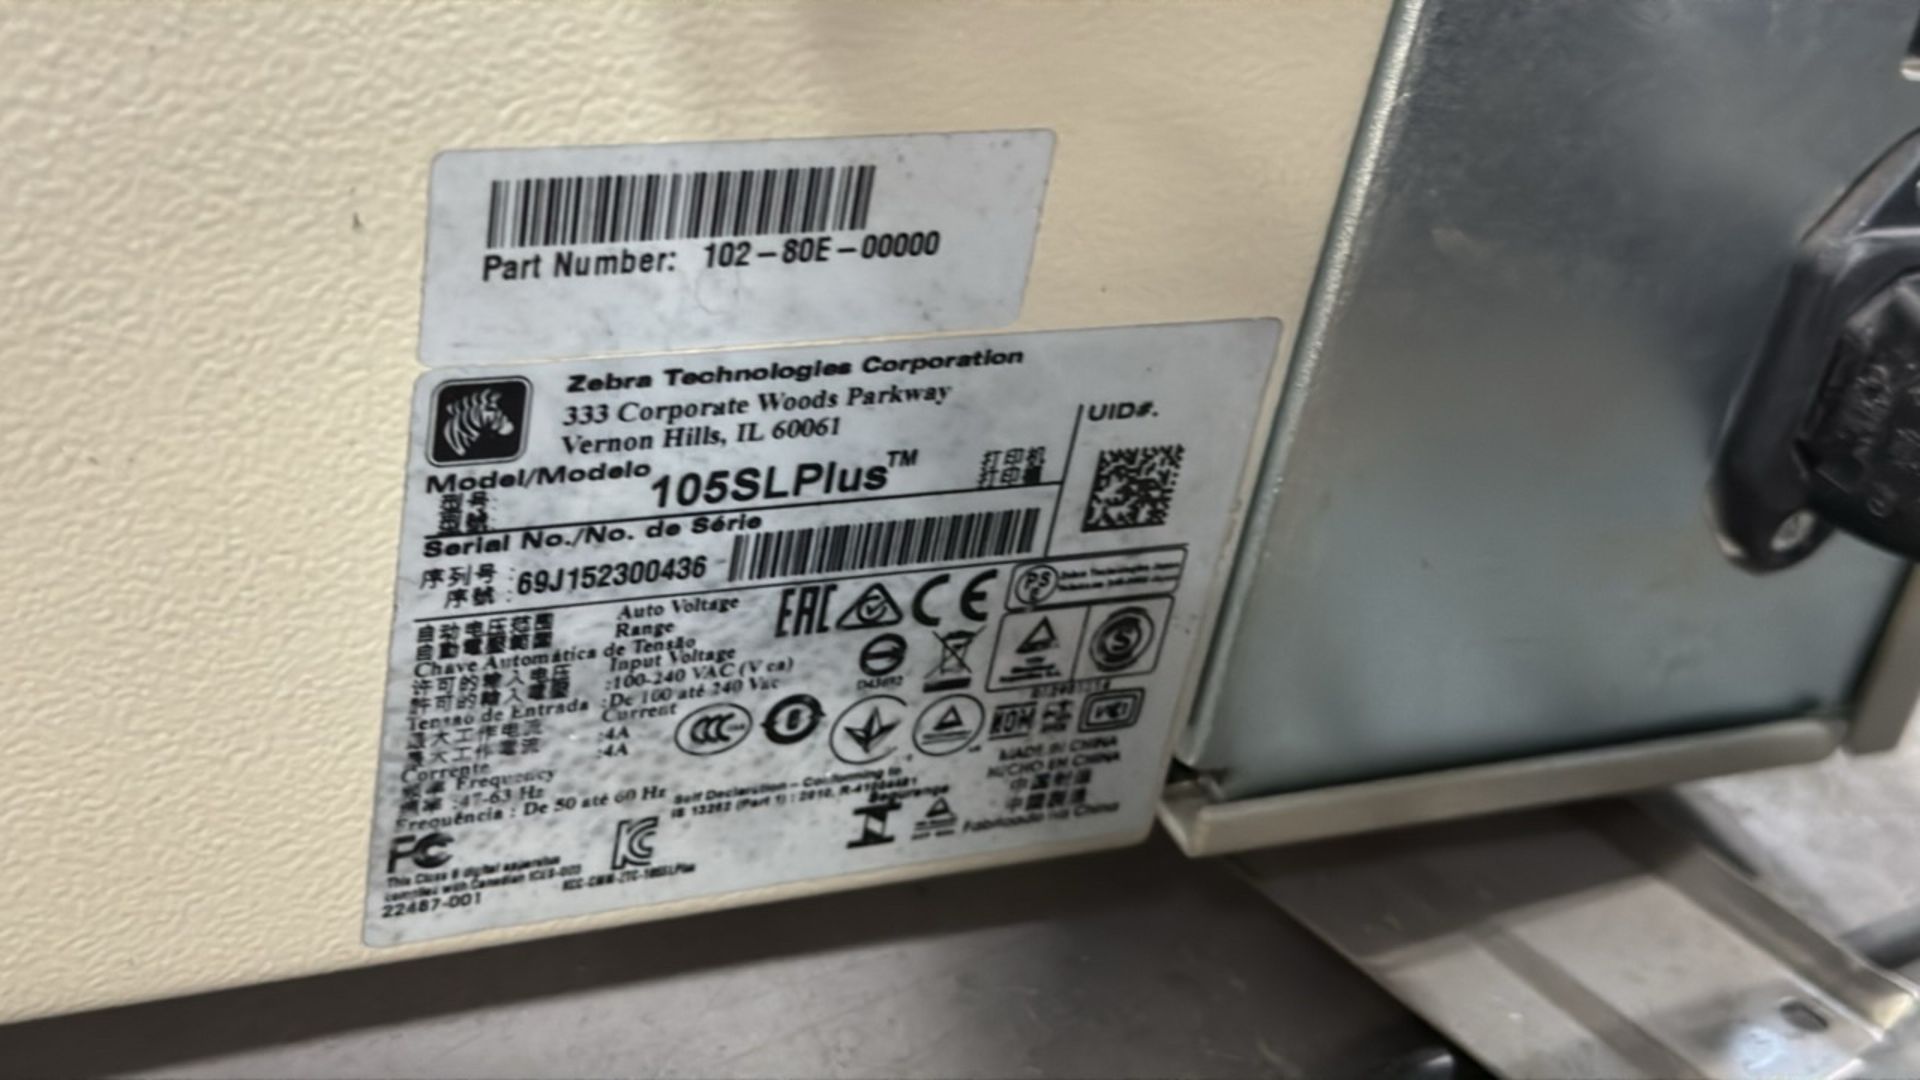 Zebra 105SL Plus Thermal Label Printer - Image 7 of 7